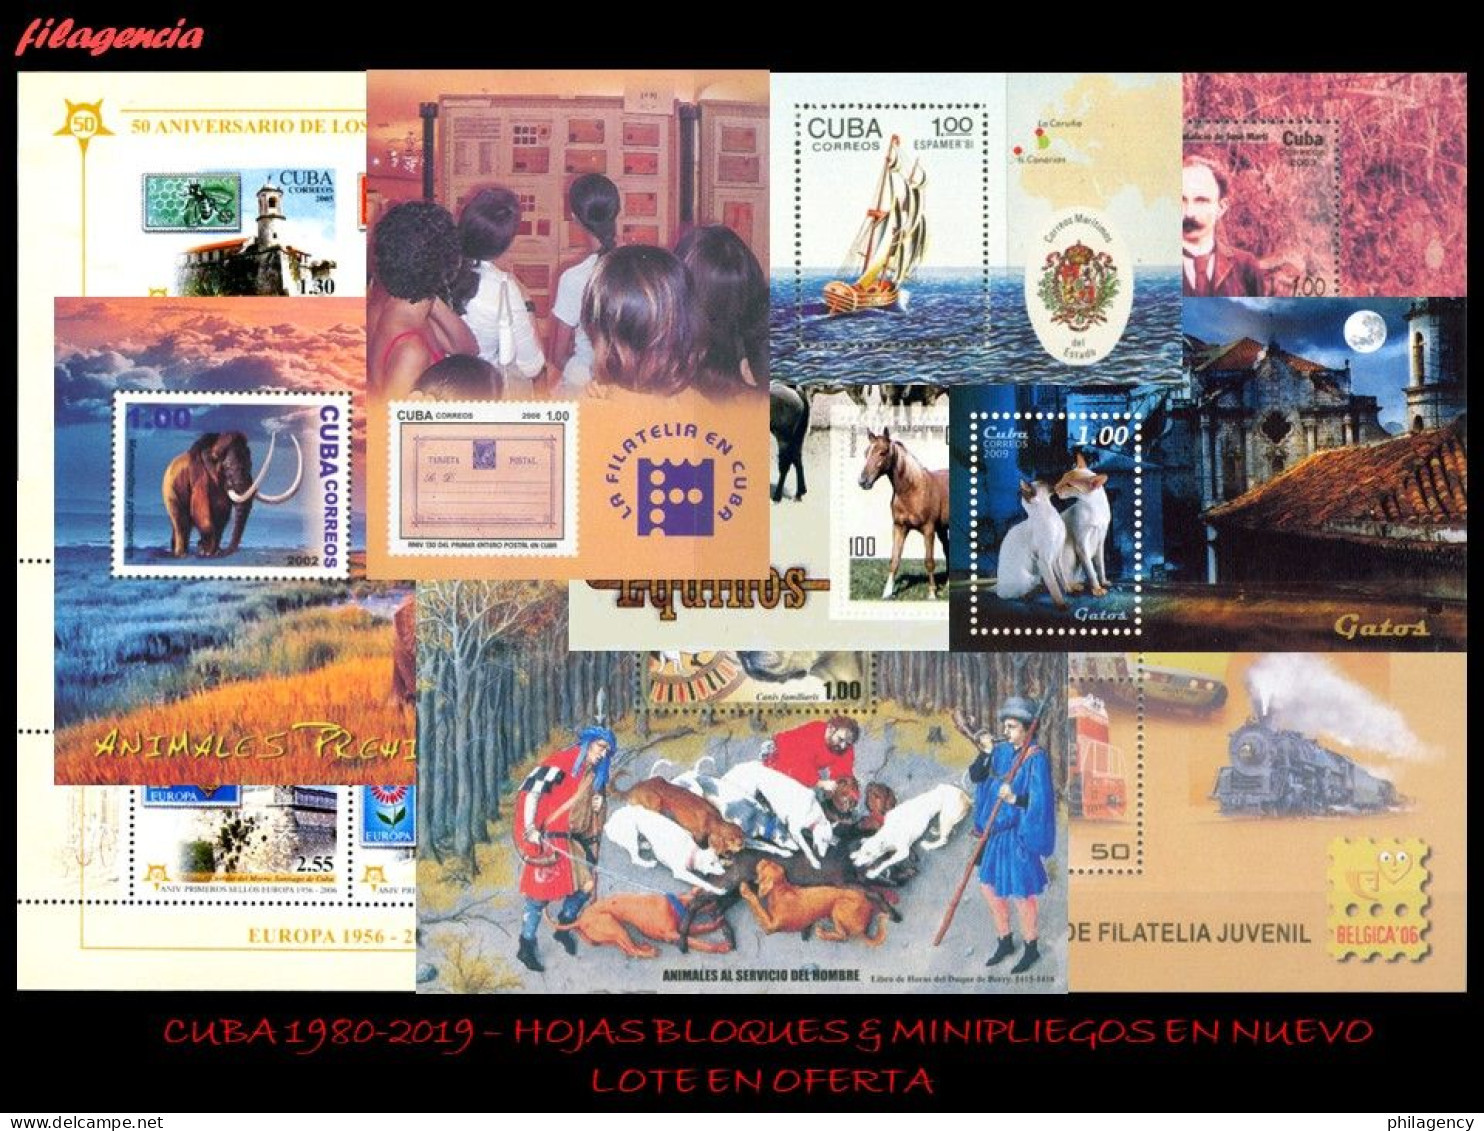 LOTES EN OFERTA. CUBA MINT. 1980-2019 LOTE DE 100 HOJAS BLOQUES & MINIPLIEGOS DIFERENTES MNH - Hojas Y Bloques